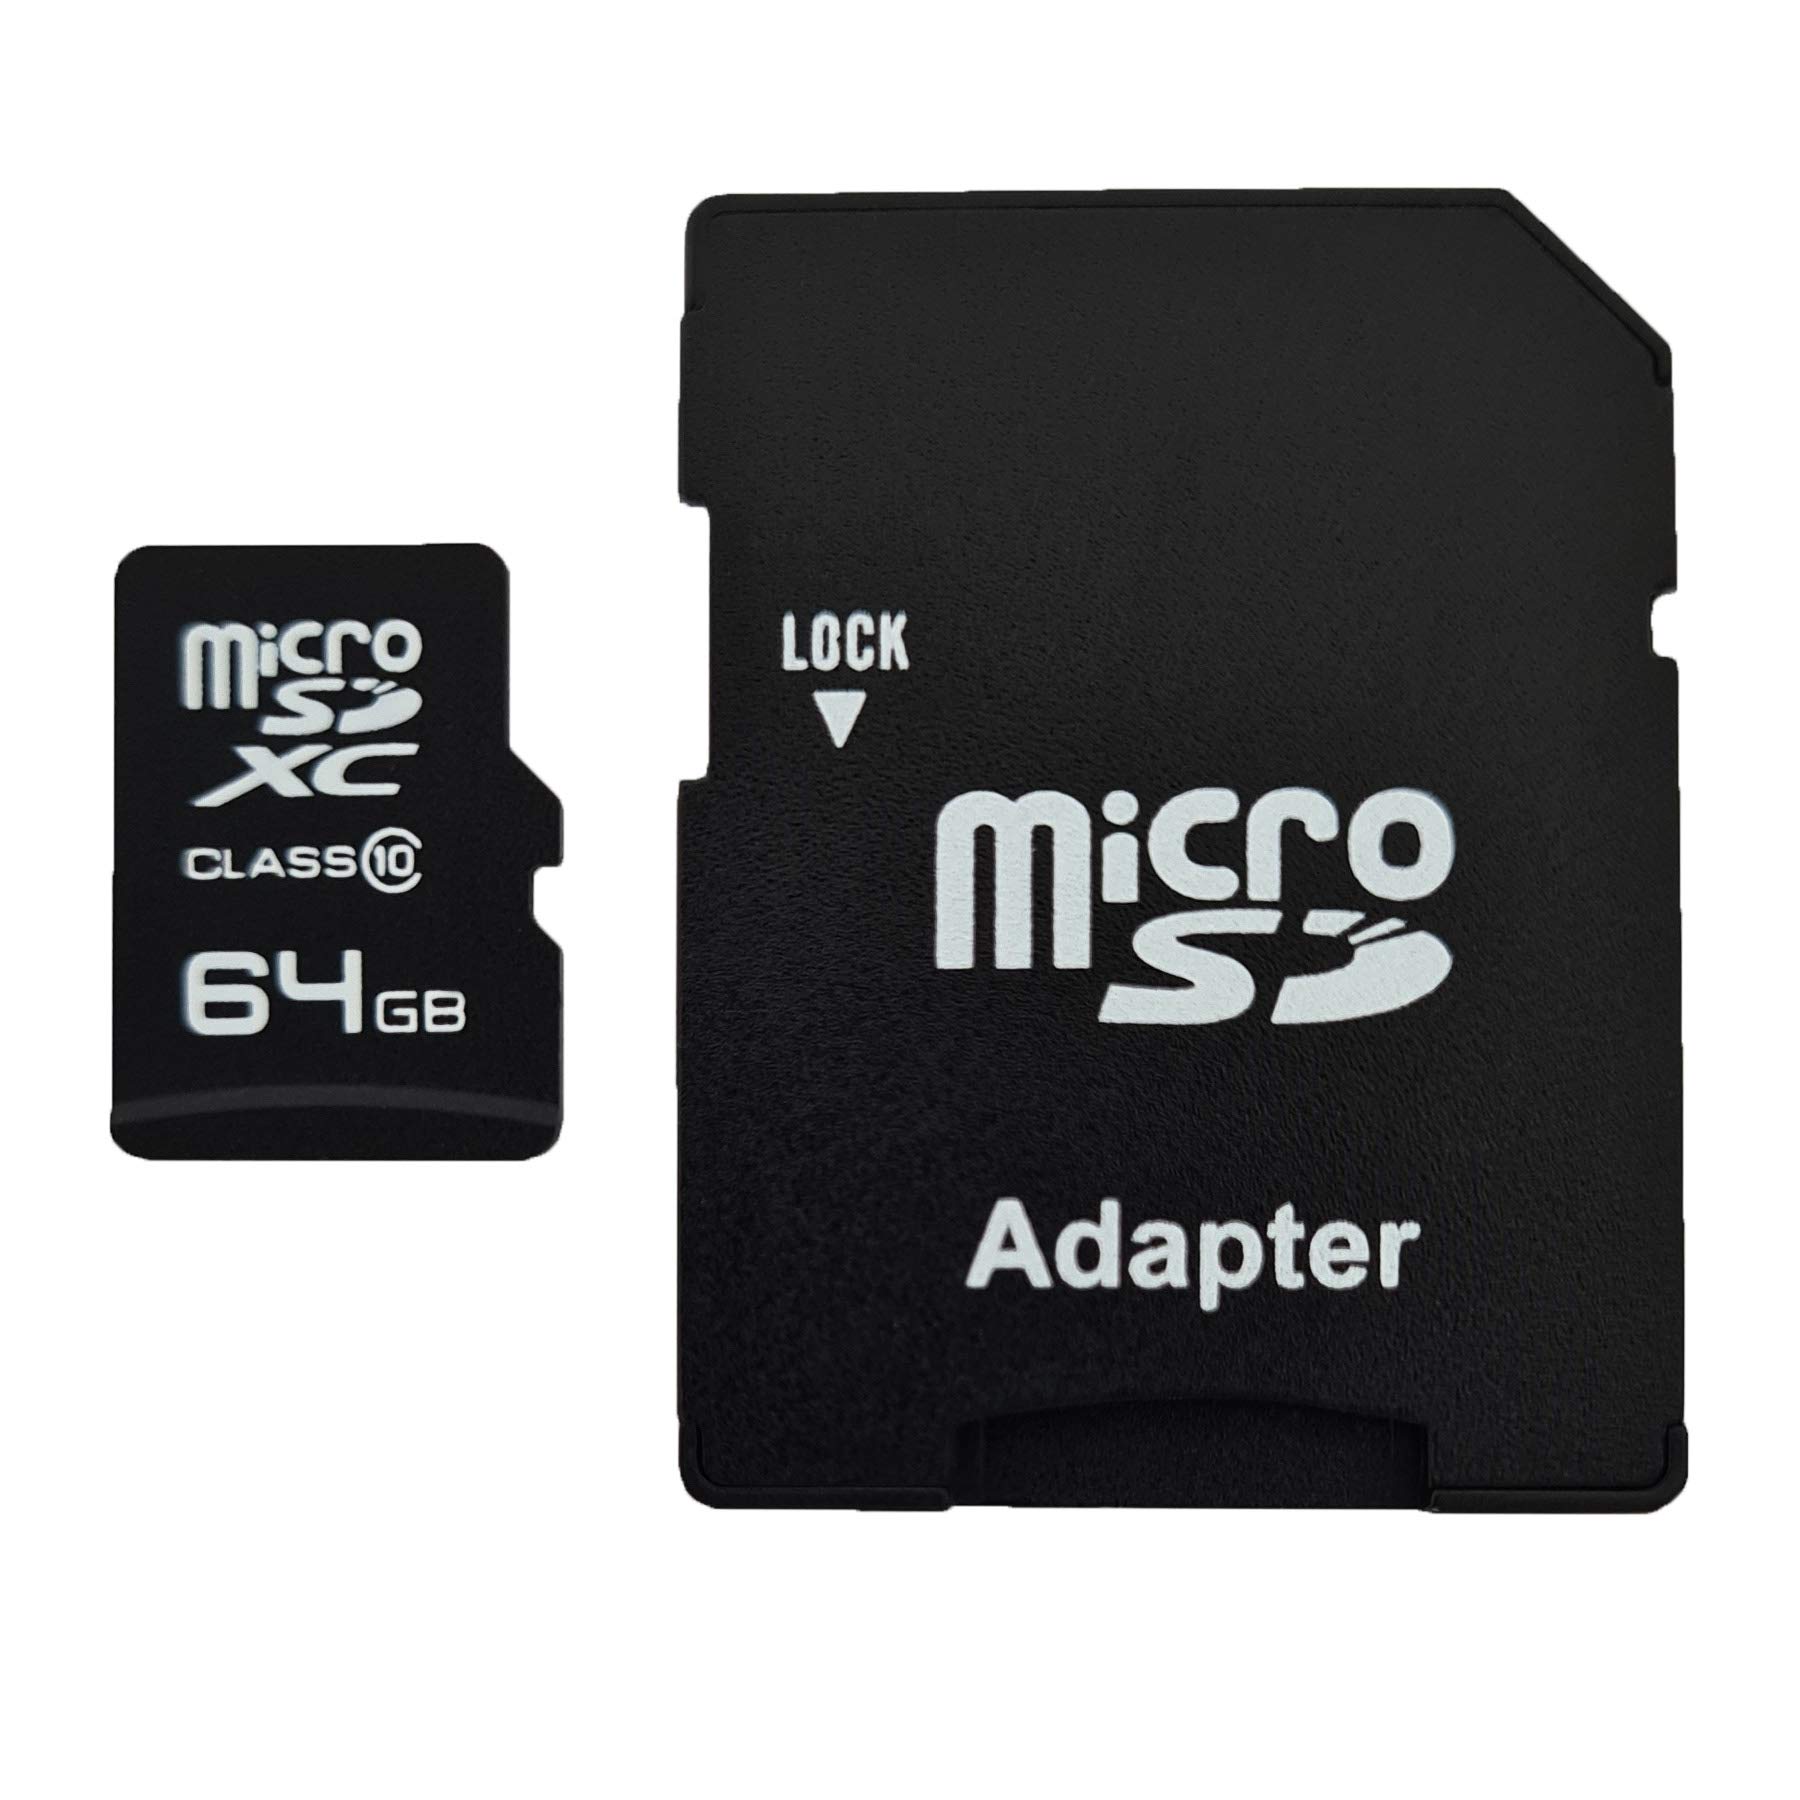 dekoelektropunktde 64GB MicroSDXC Speicherkarte mit Adapter Class 10 kompatibel für Canon PowerShot A2200 E1 A810 S110 A480 G7